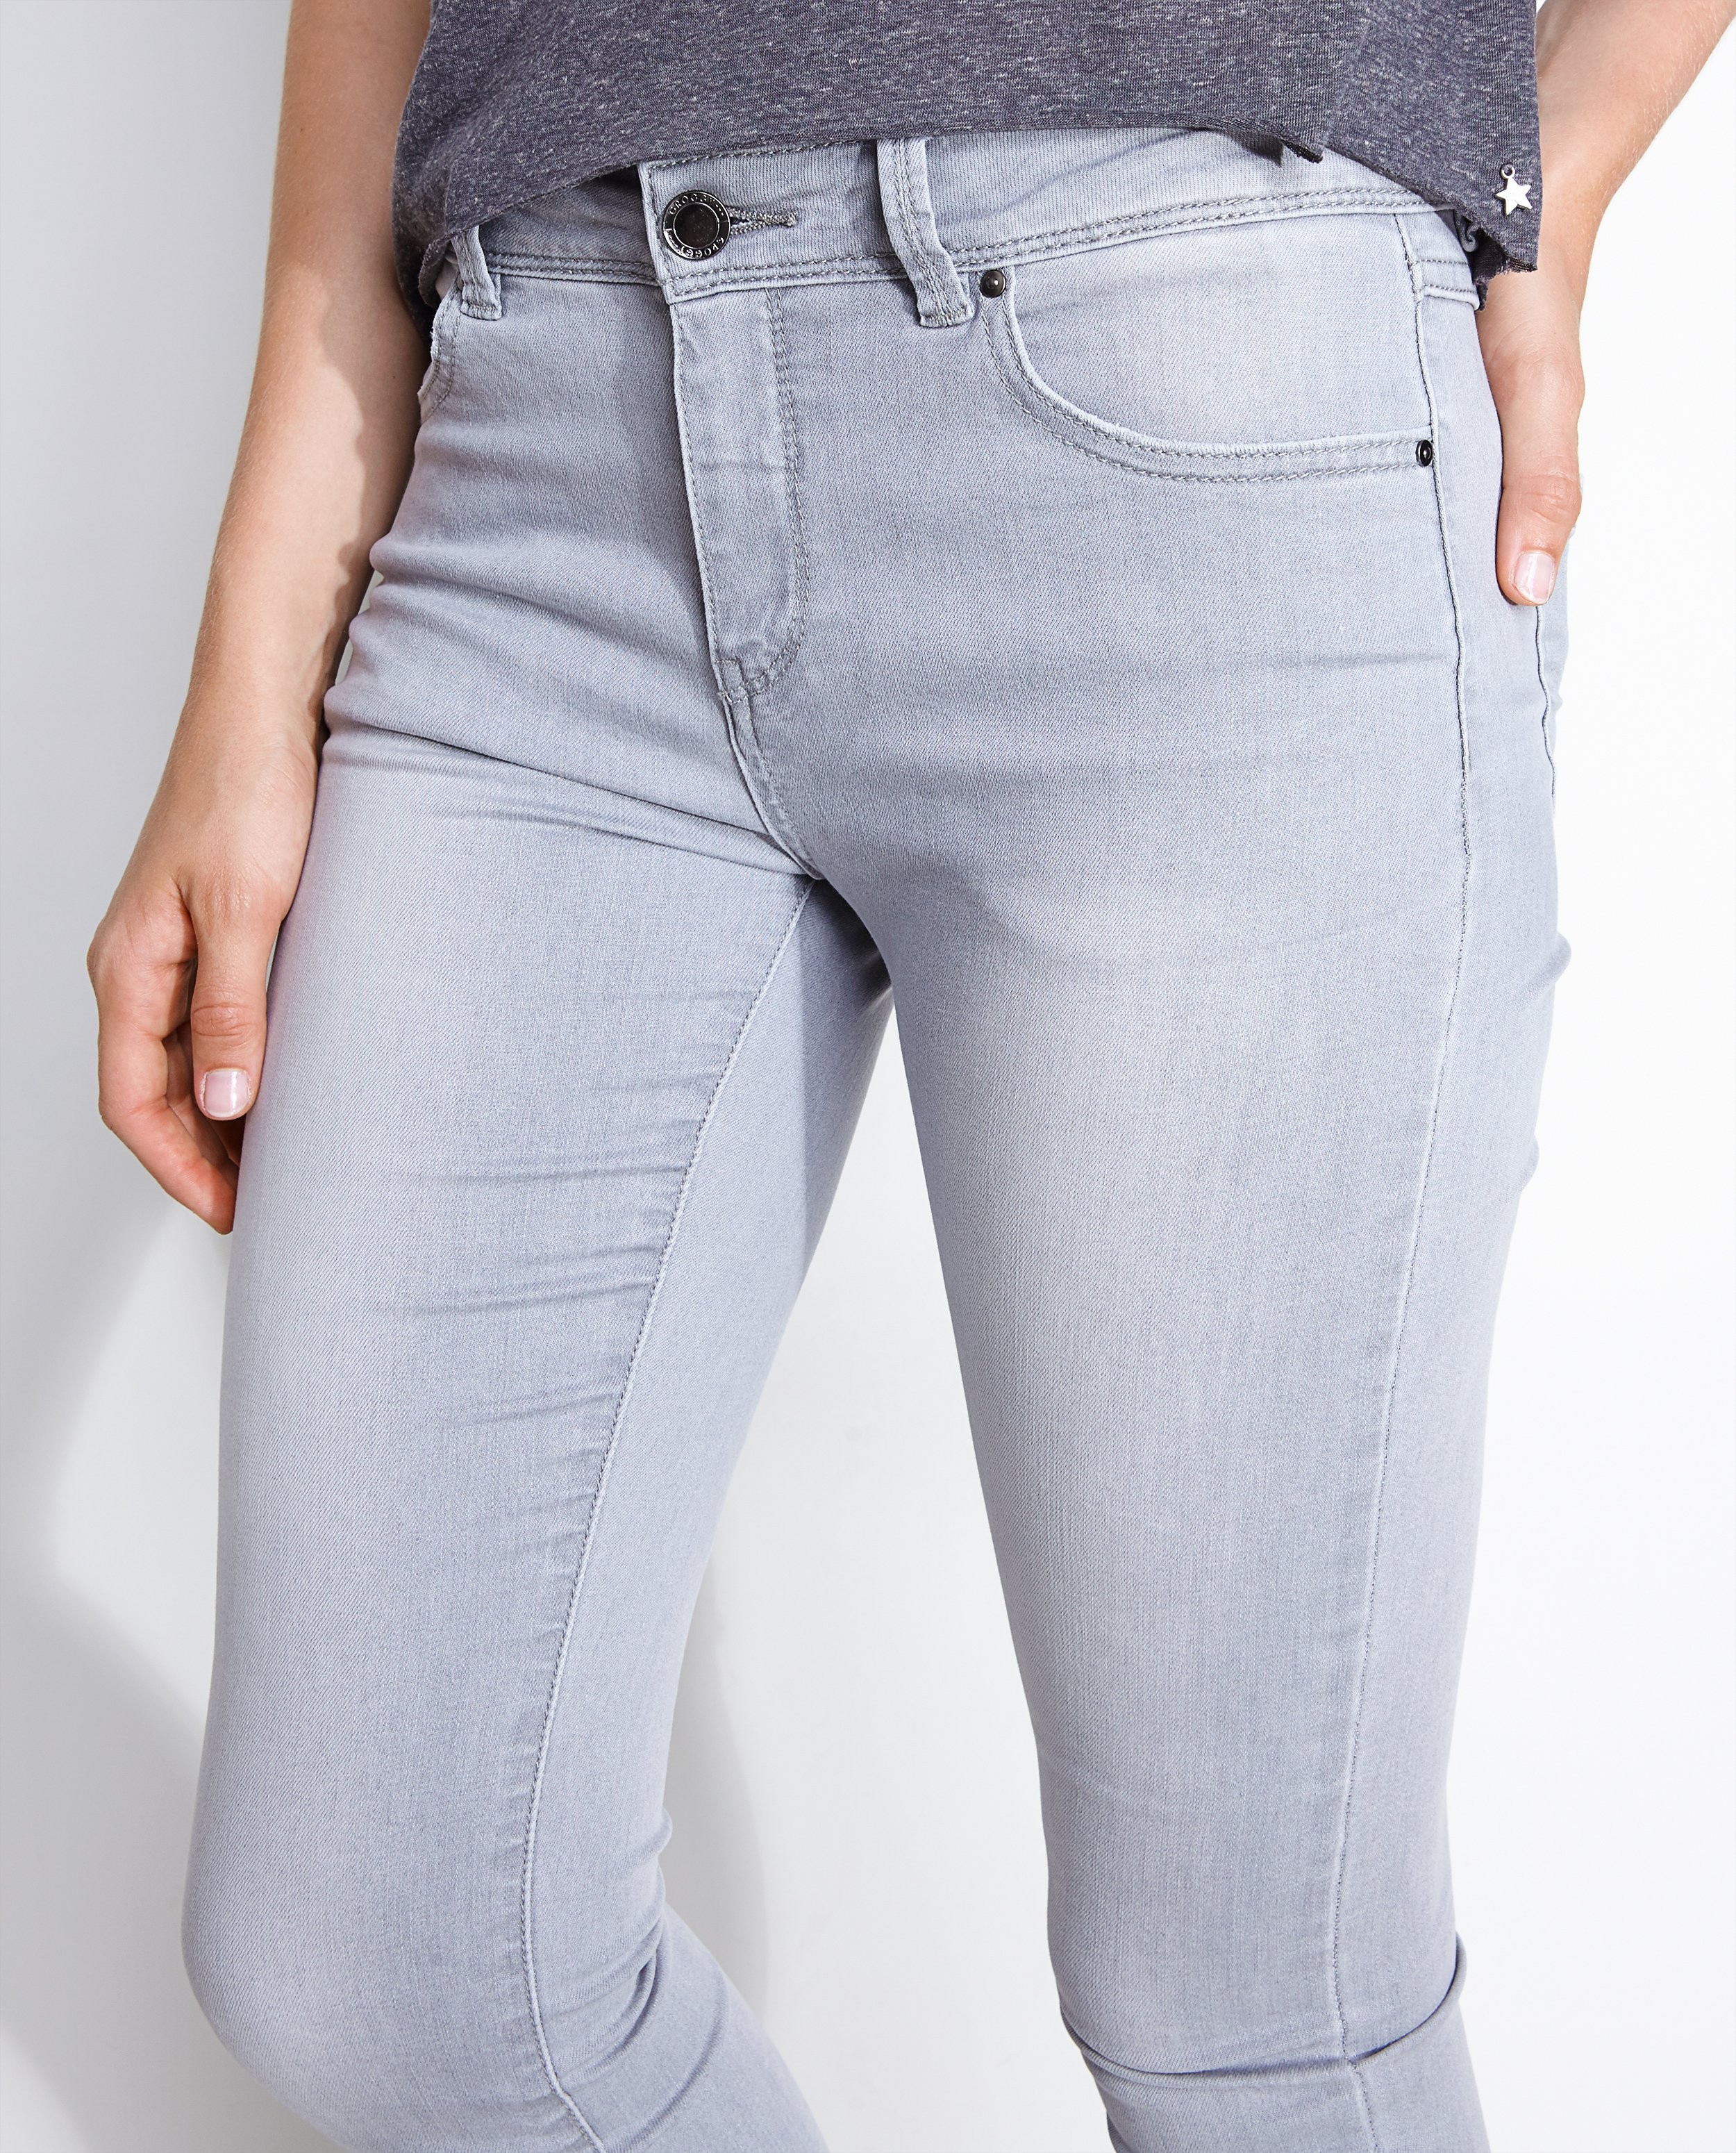 Jeans - Grijze super skinny jeans 